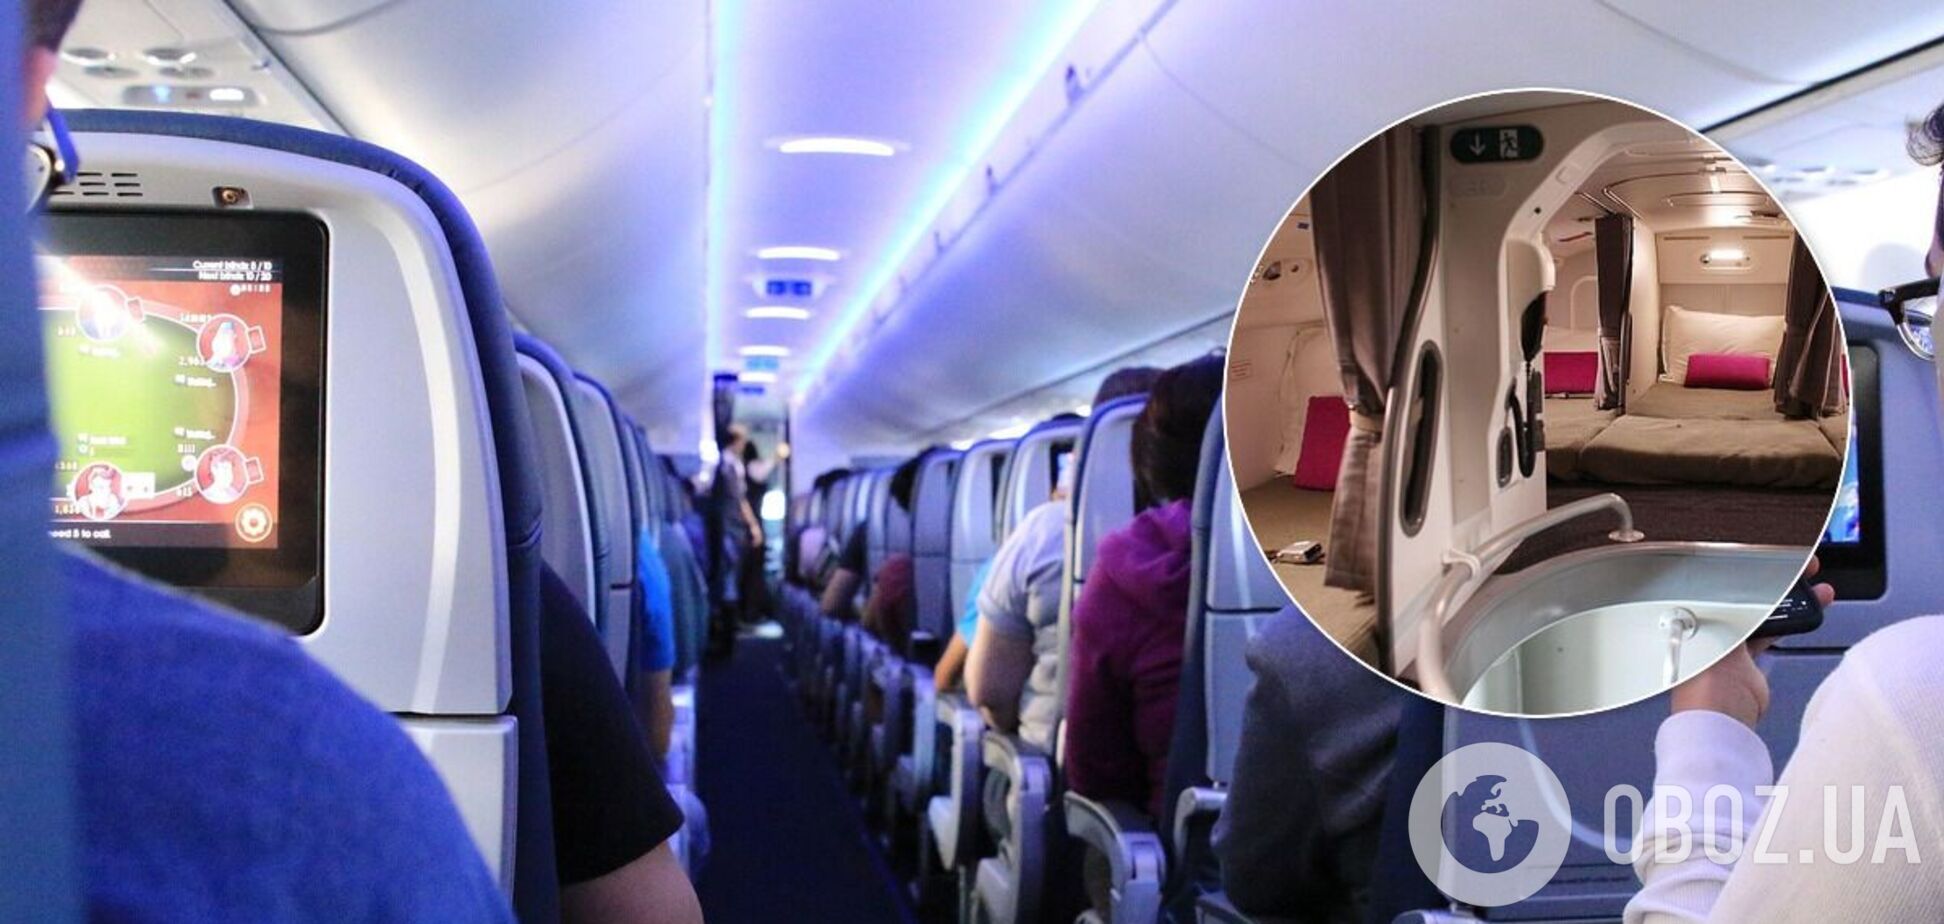 Як виглядають секретні кімнати для стюардес в літаку